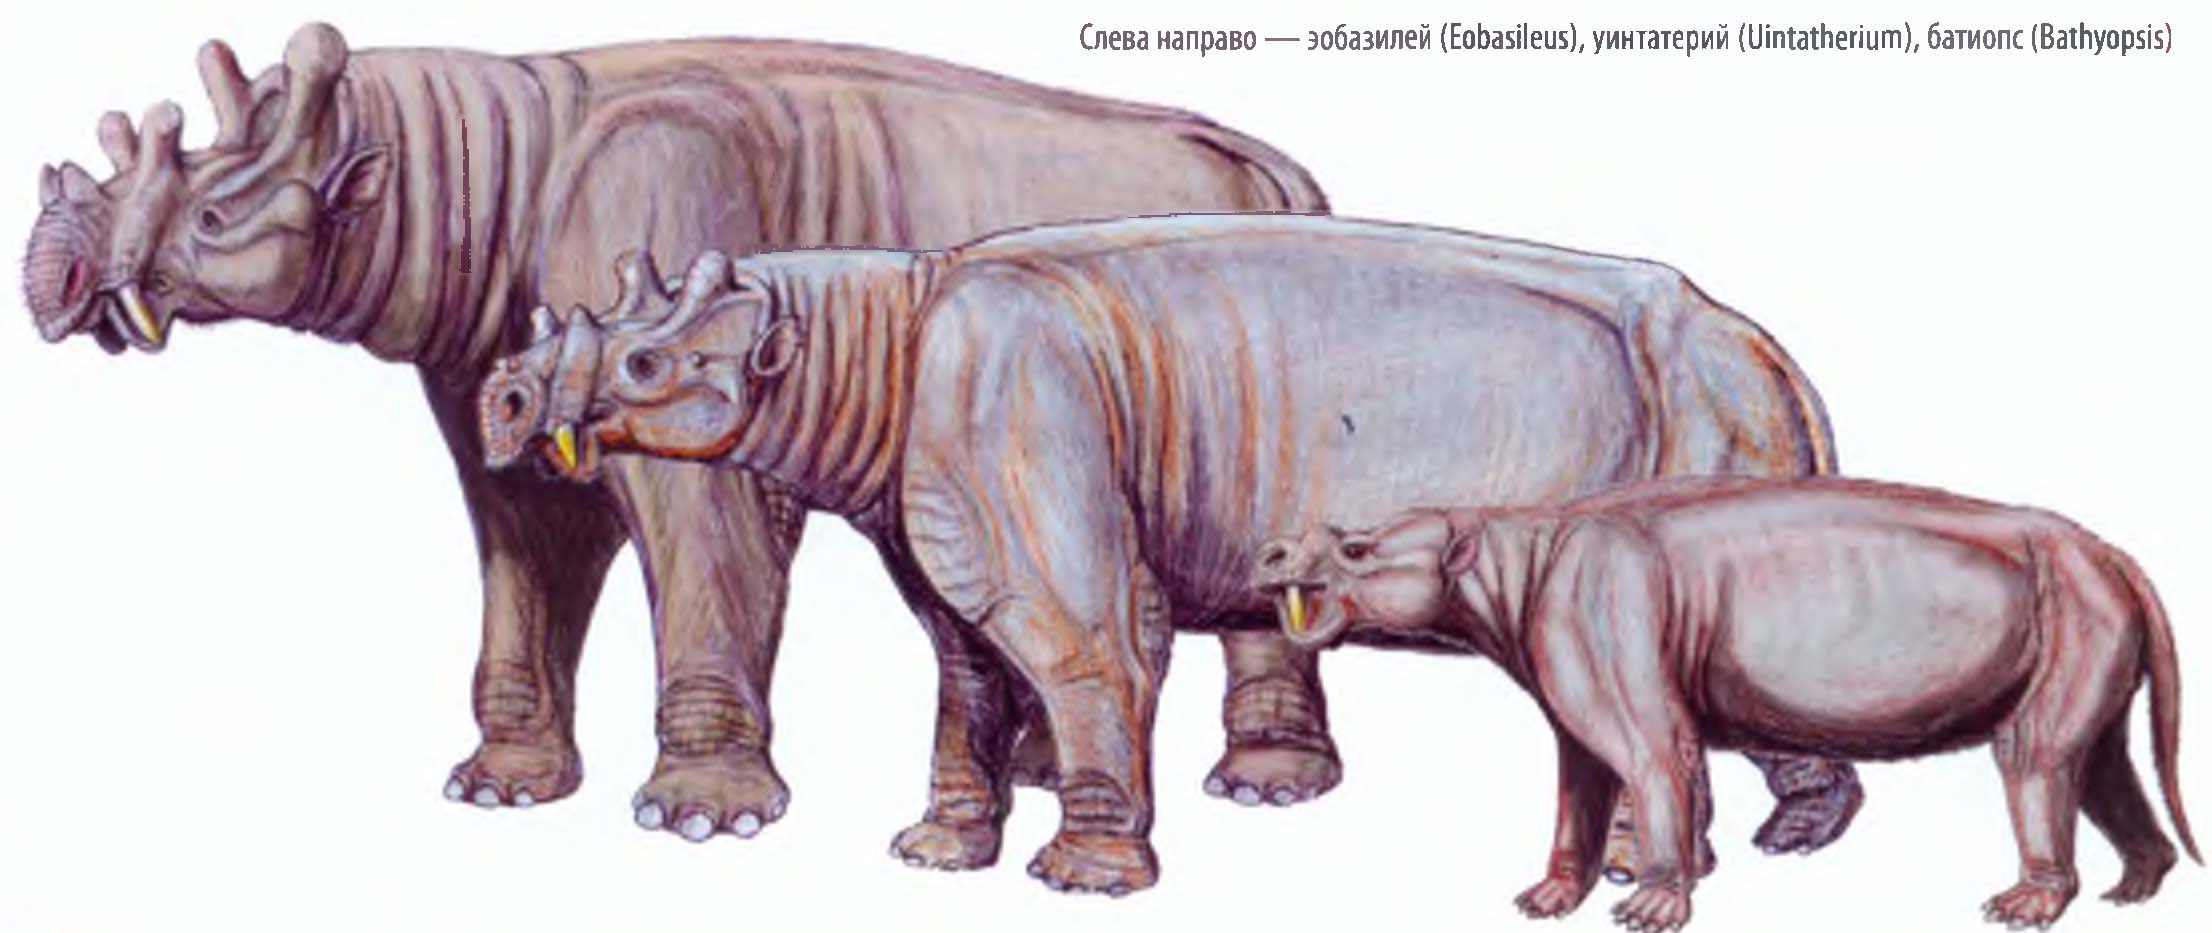 Древние млекопитающие вымершие много миллионов лет назад.